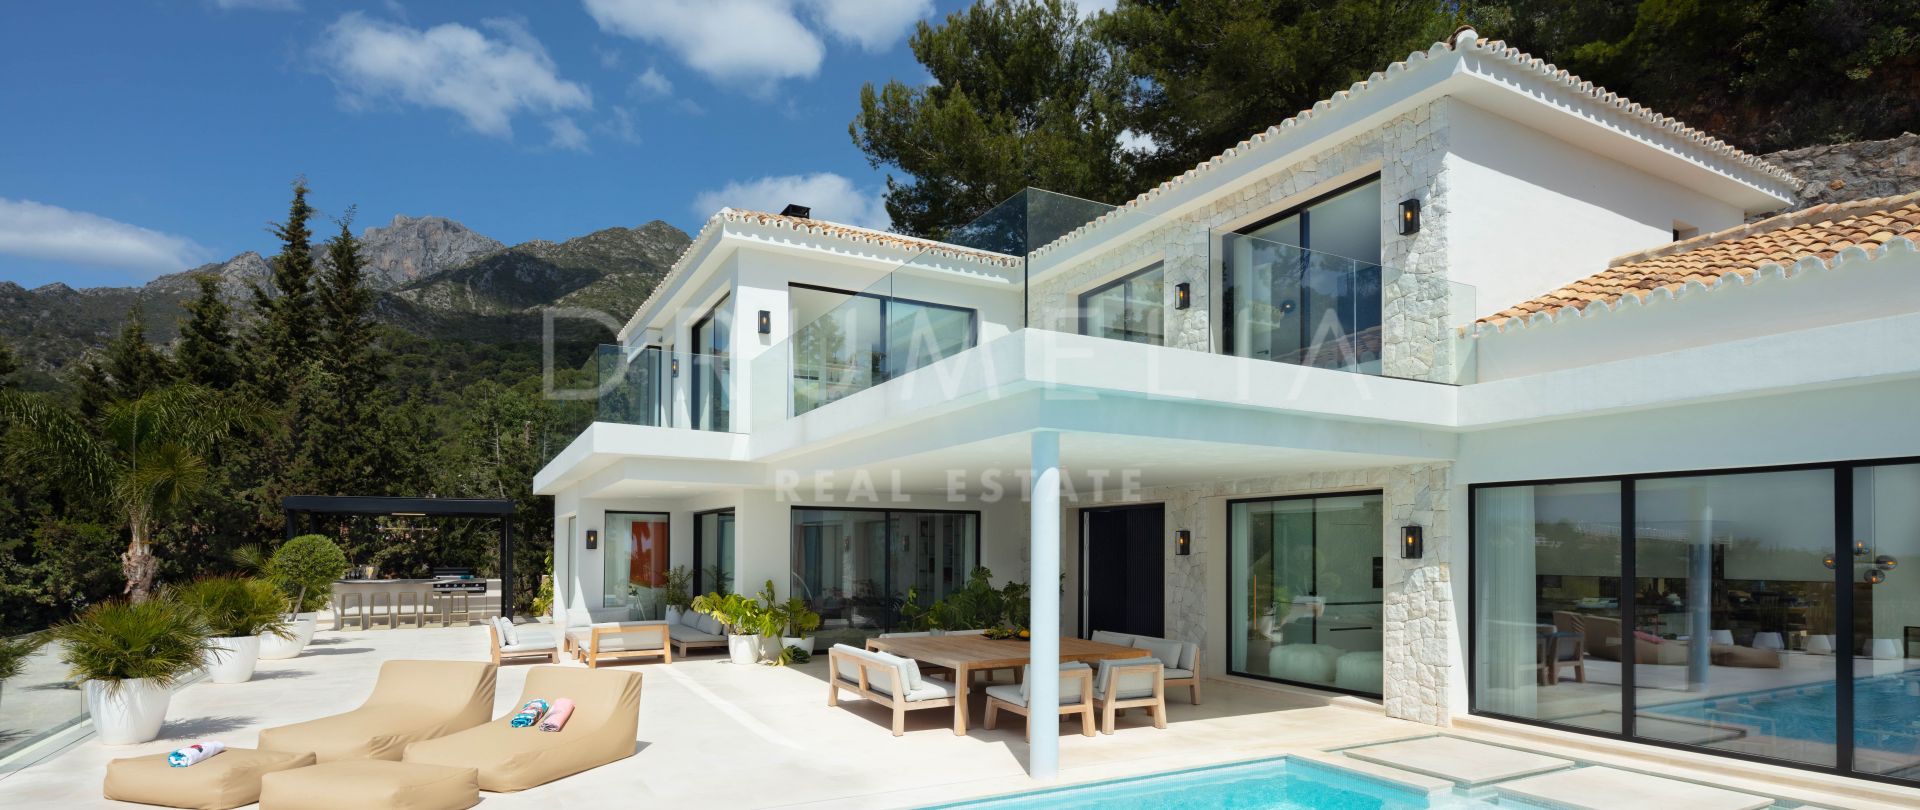 Camojan 45 - Exquisita villa moderna de lujo, Cascada de Camojan, Milla de Oro de Marbella